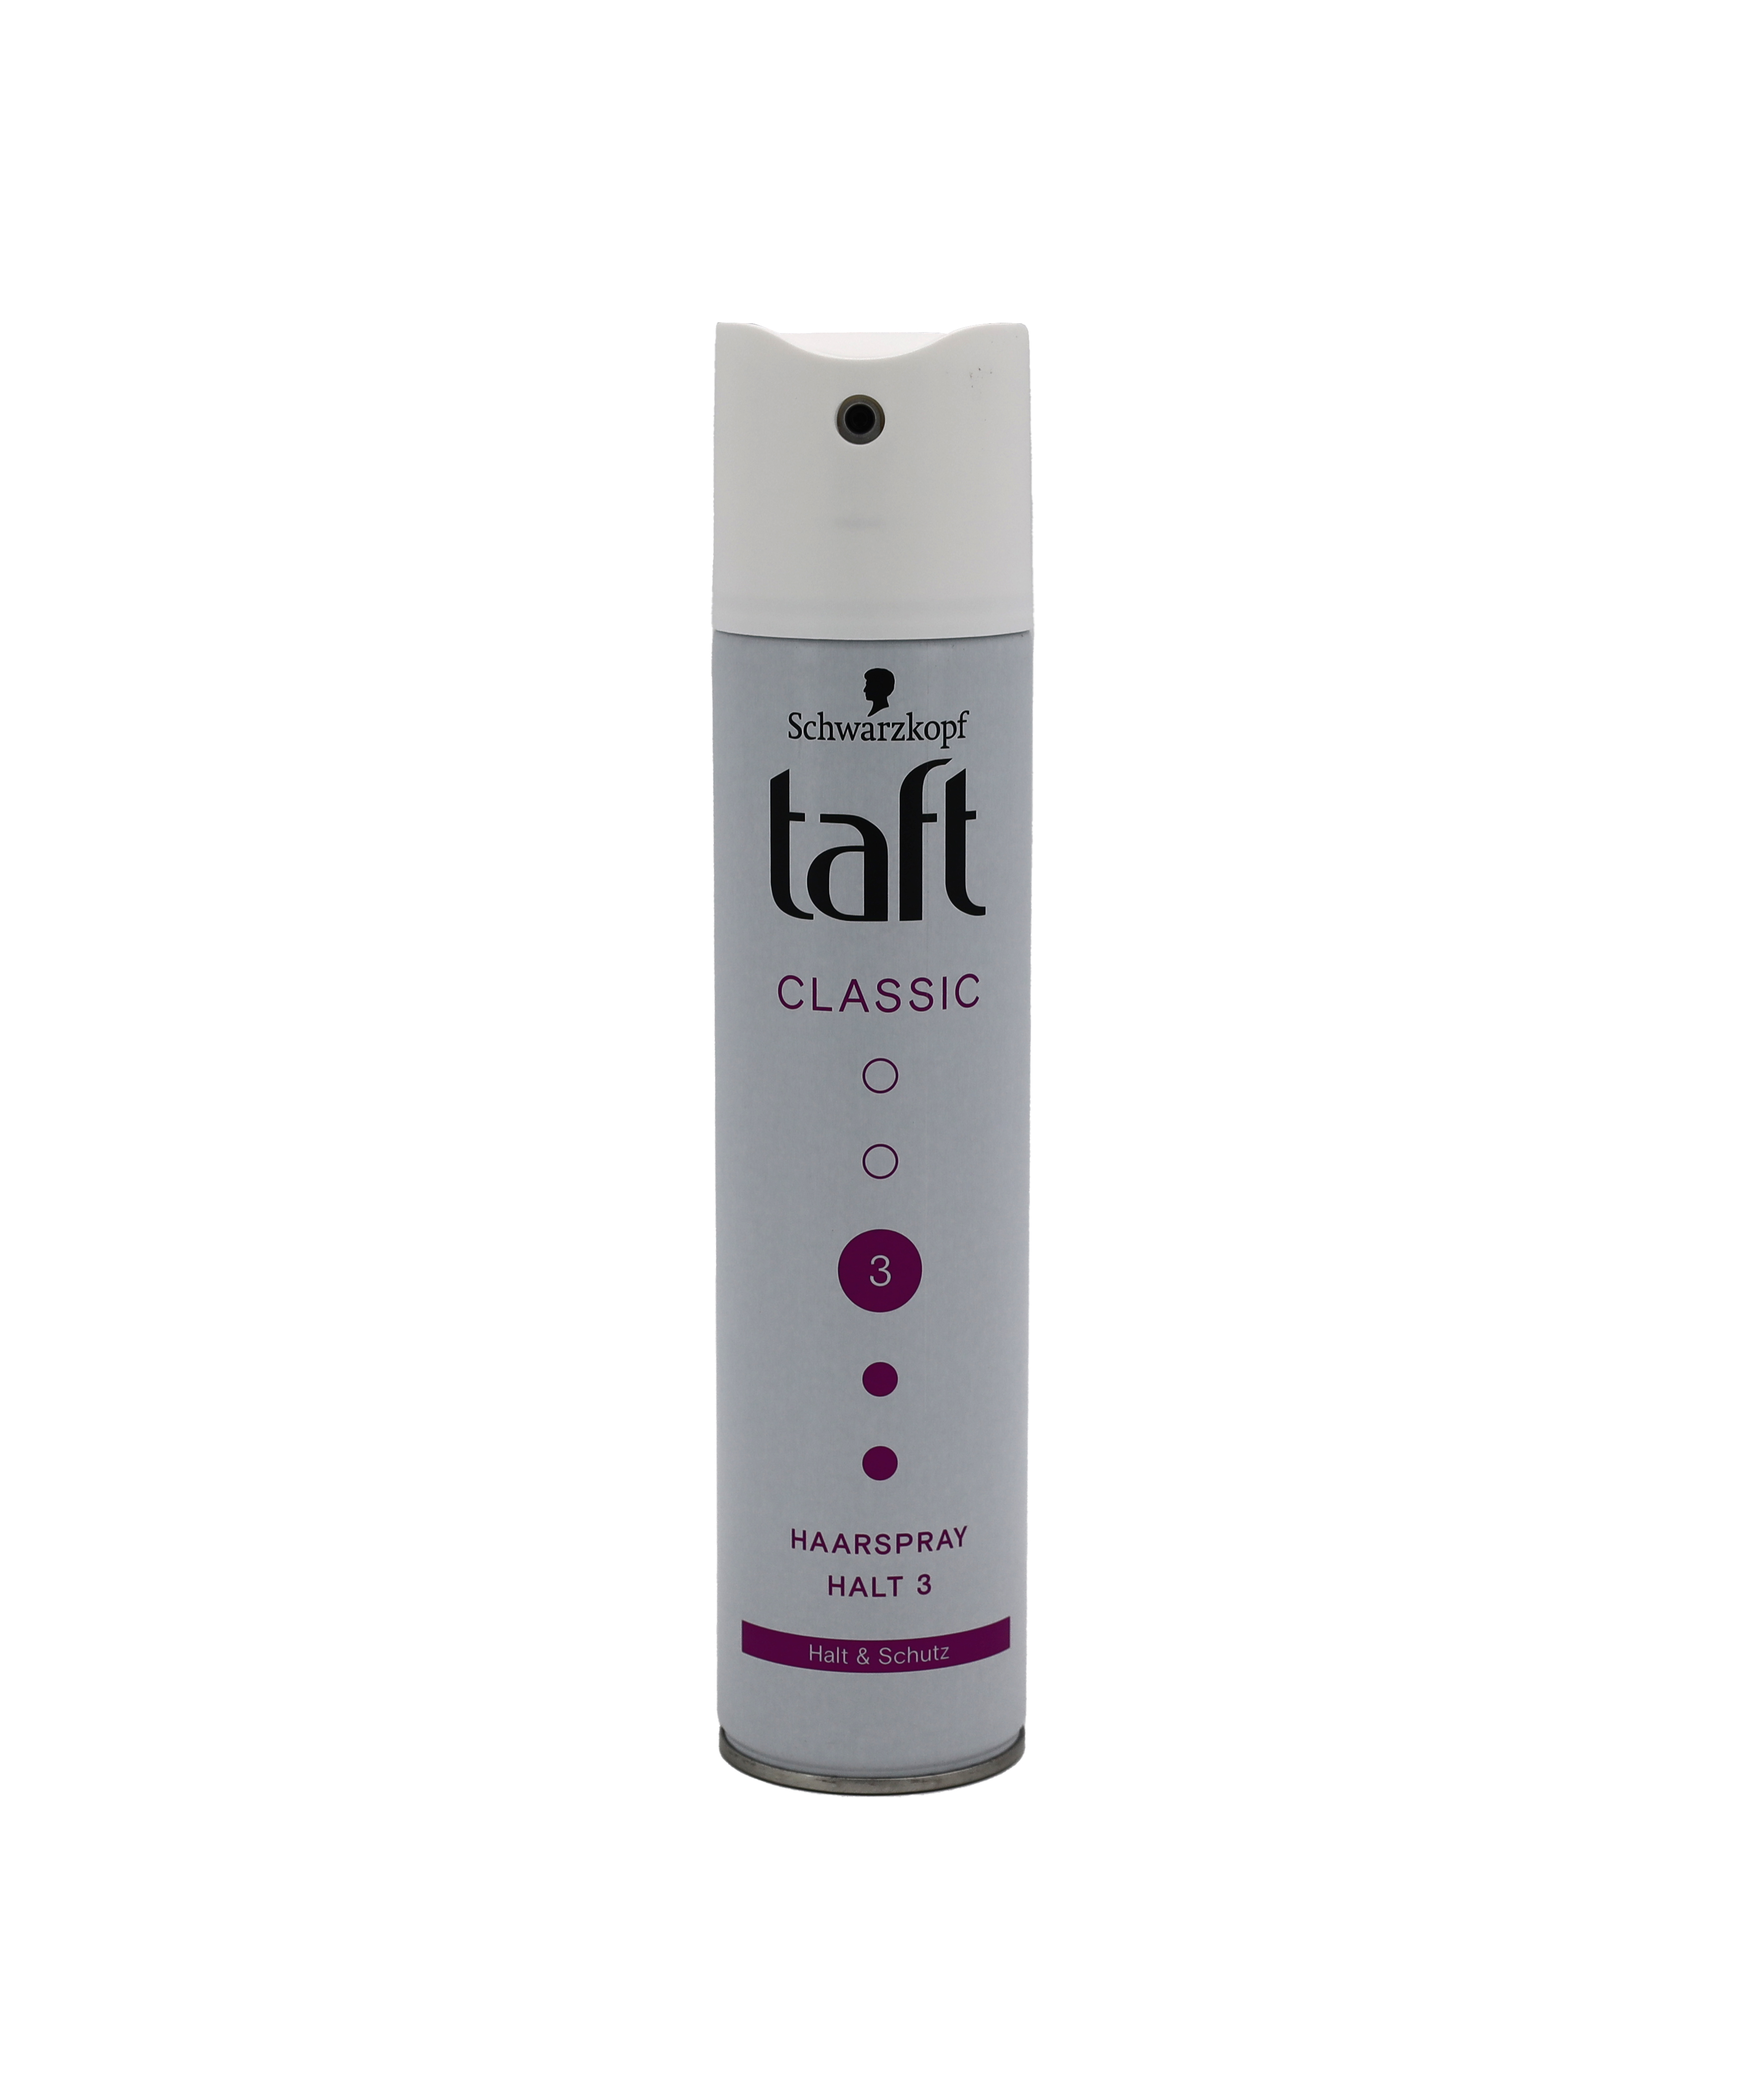 Taft Haarspray Classic Halt3 Halt und Schutz 250ml